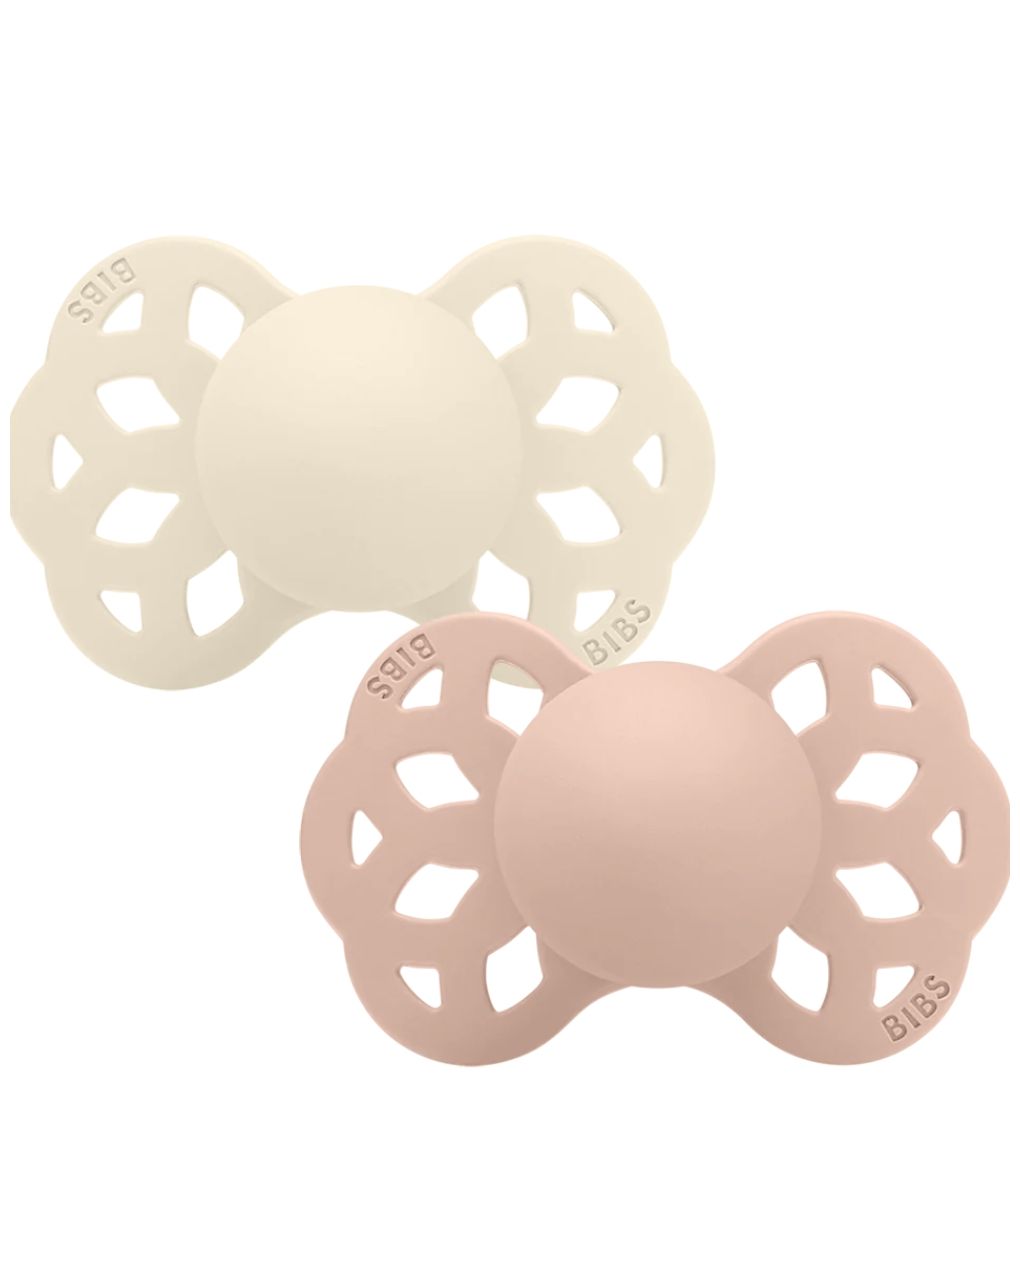 Set 2 ciucci tettarella simmetrica in silicone 0/6 mesi - colore avorio/rosa cipria - bibs - BIBS